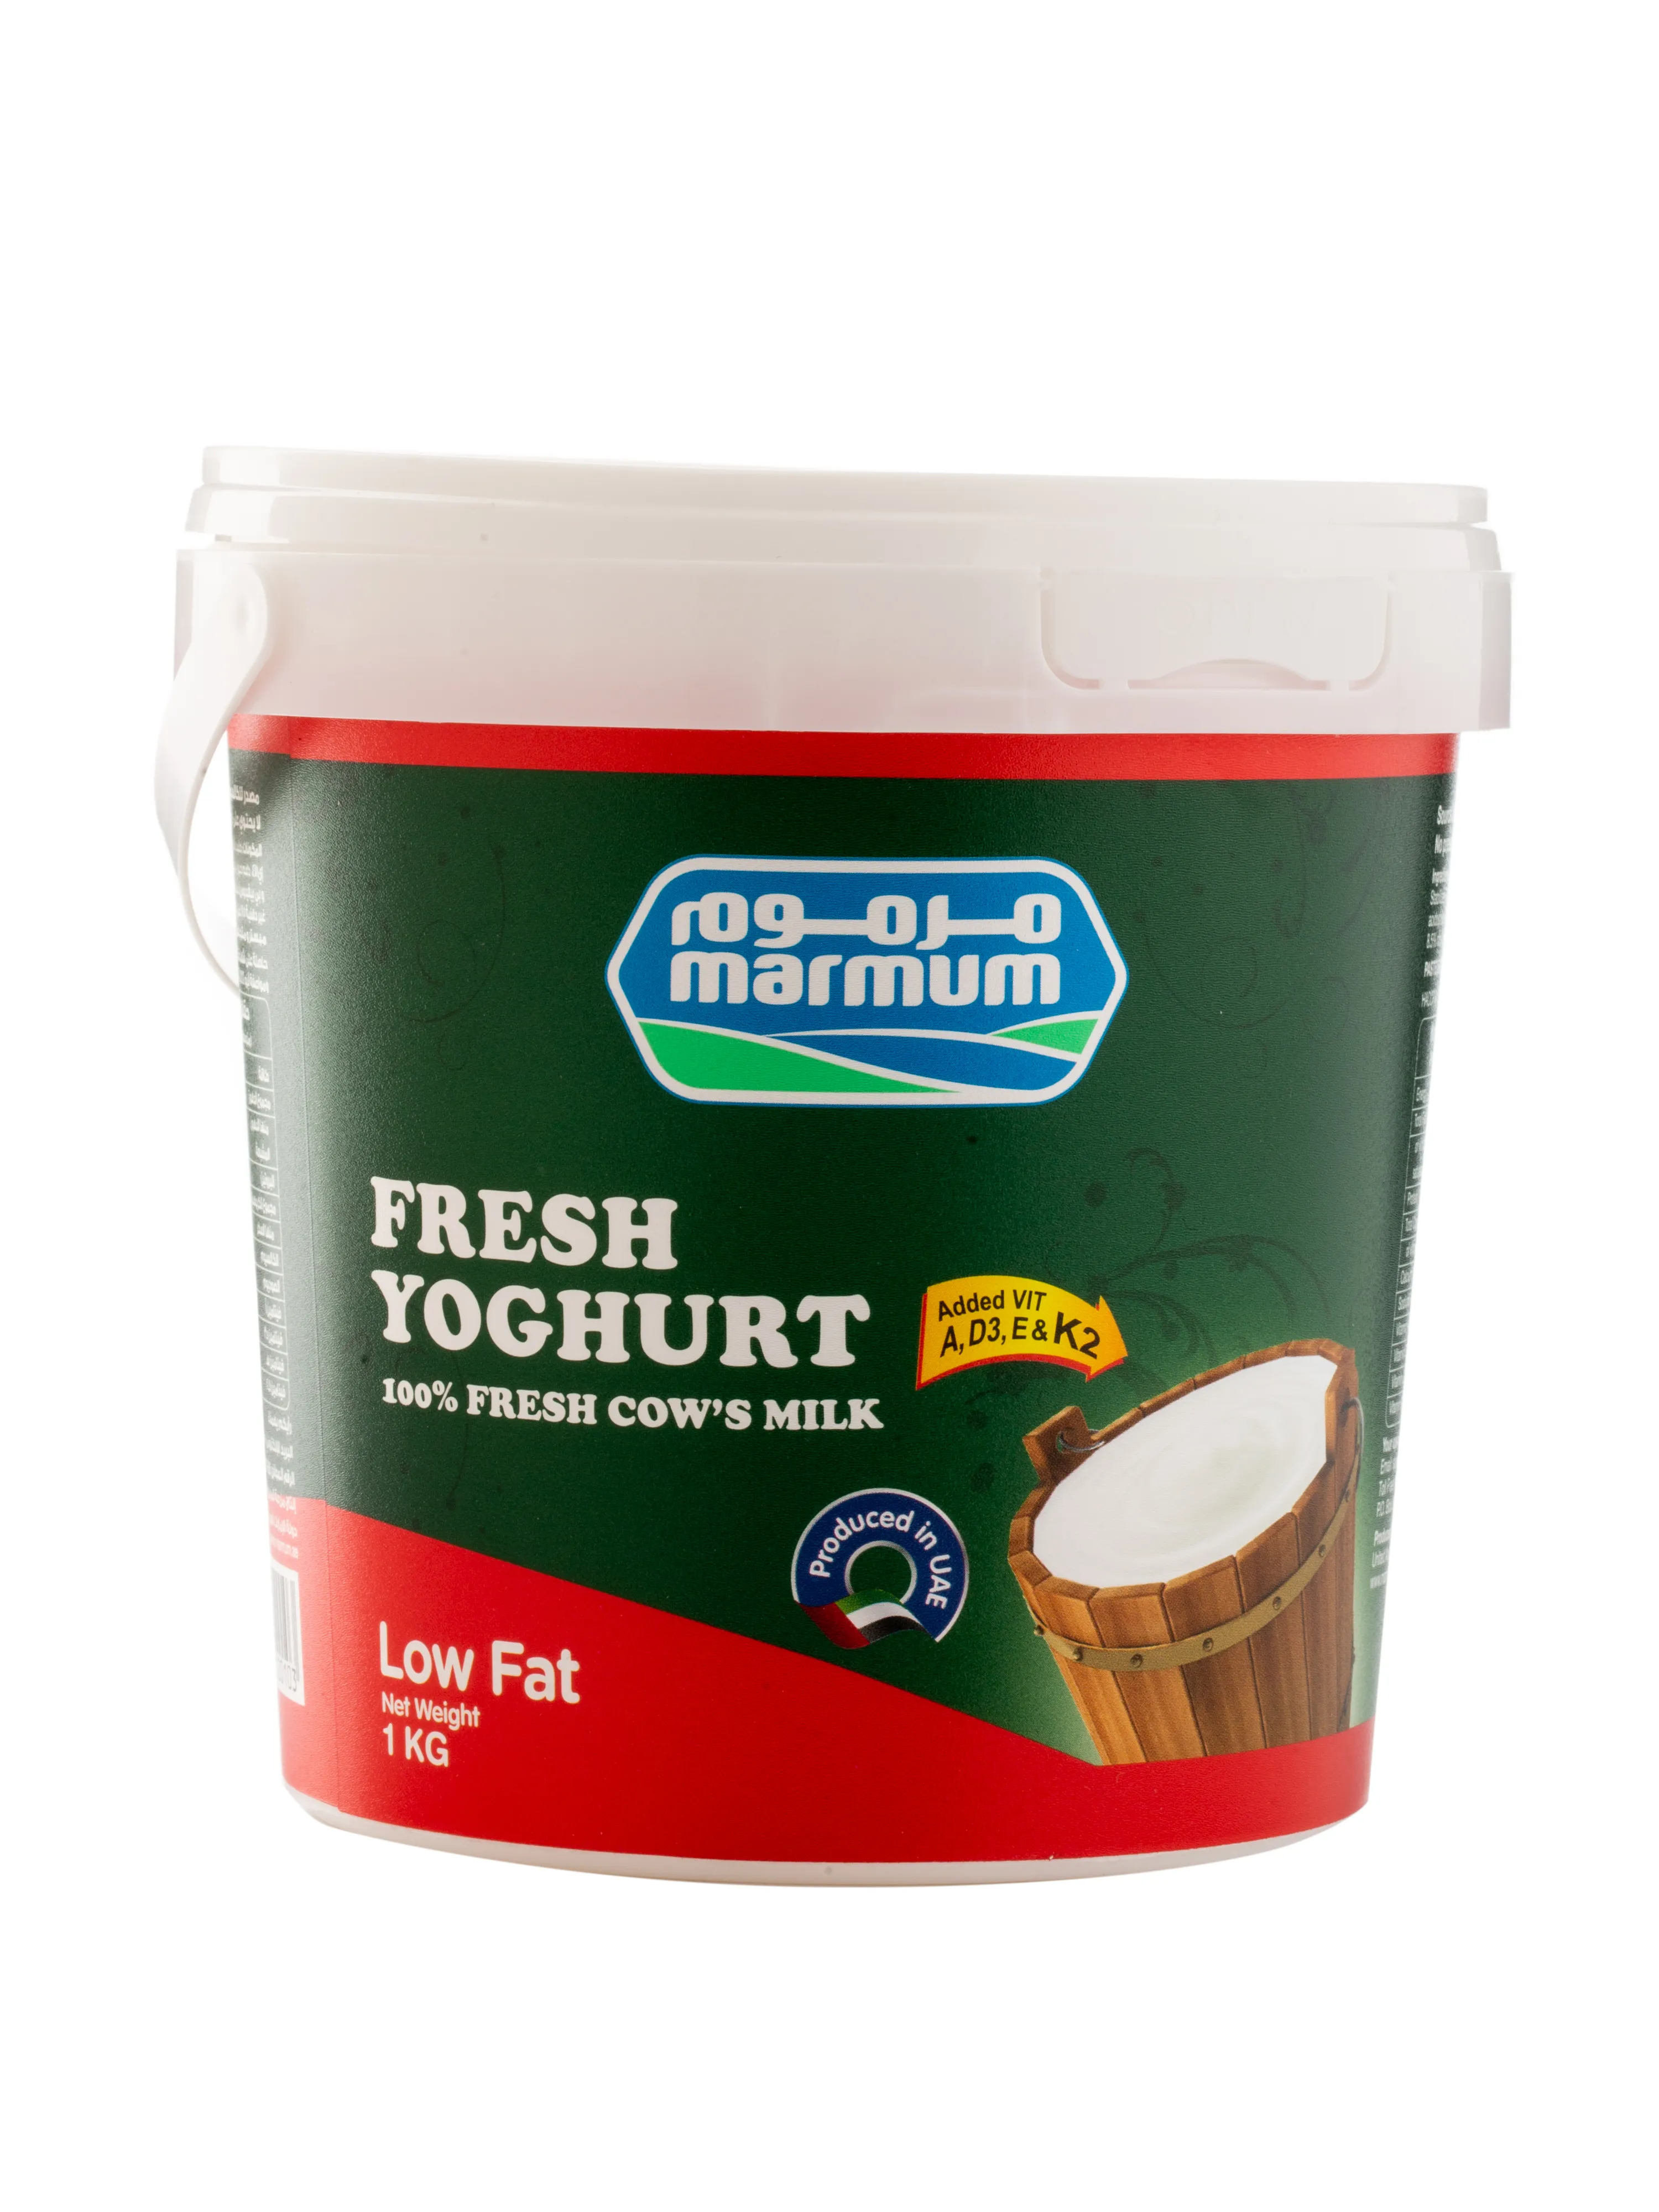 1kg Fresh Low Fat Yoghurt